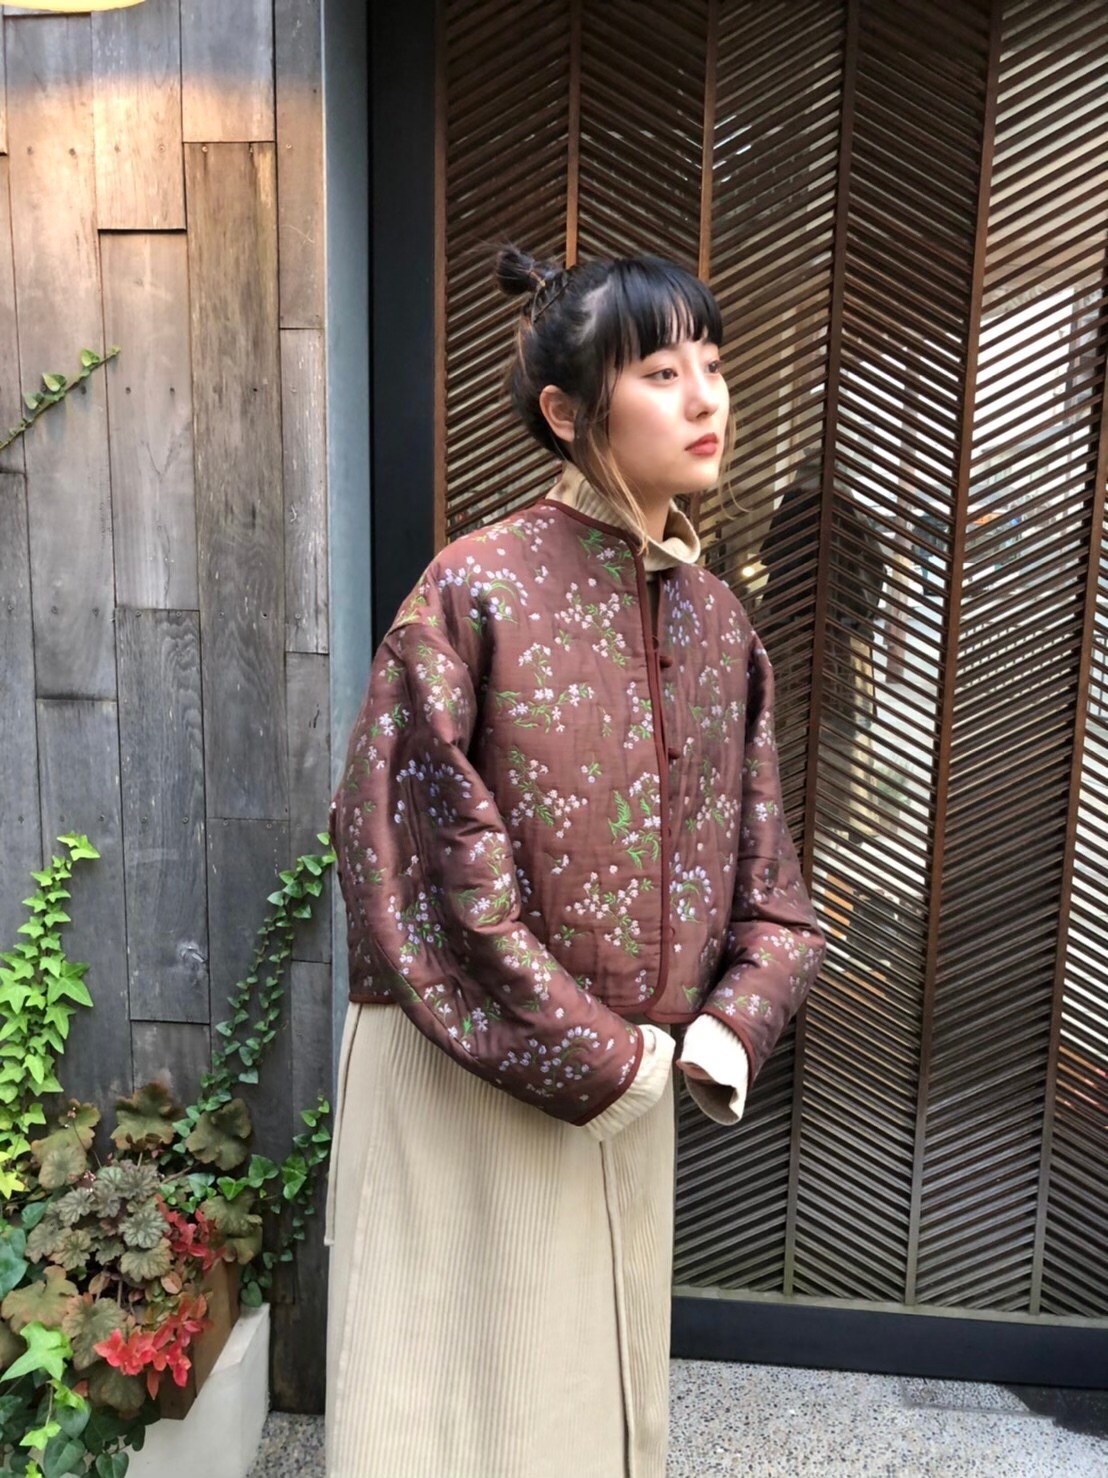 伊勢丹別注floral jacquard jacket サイズ1